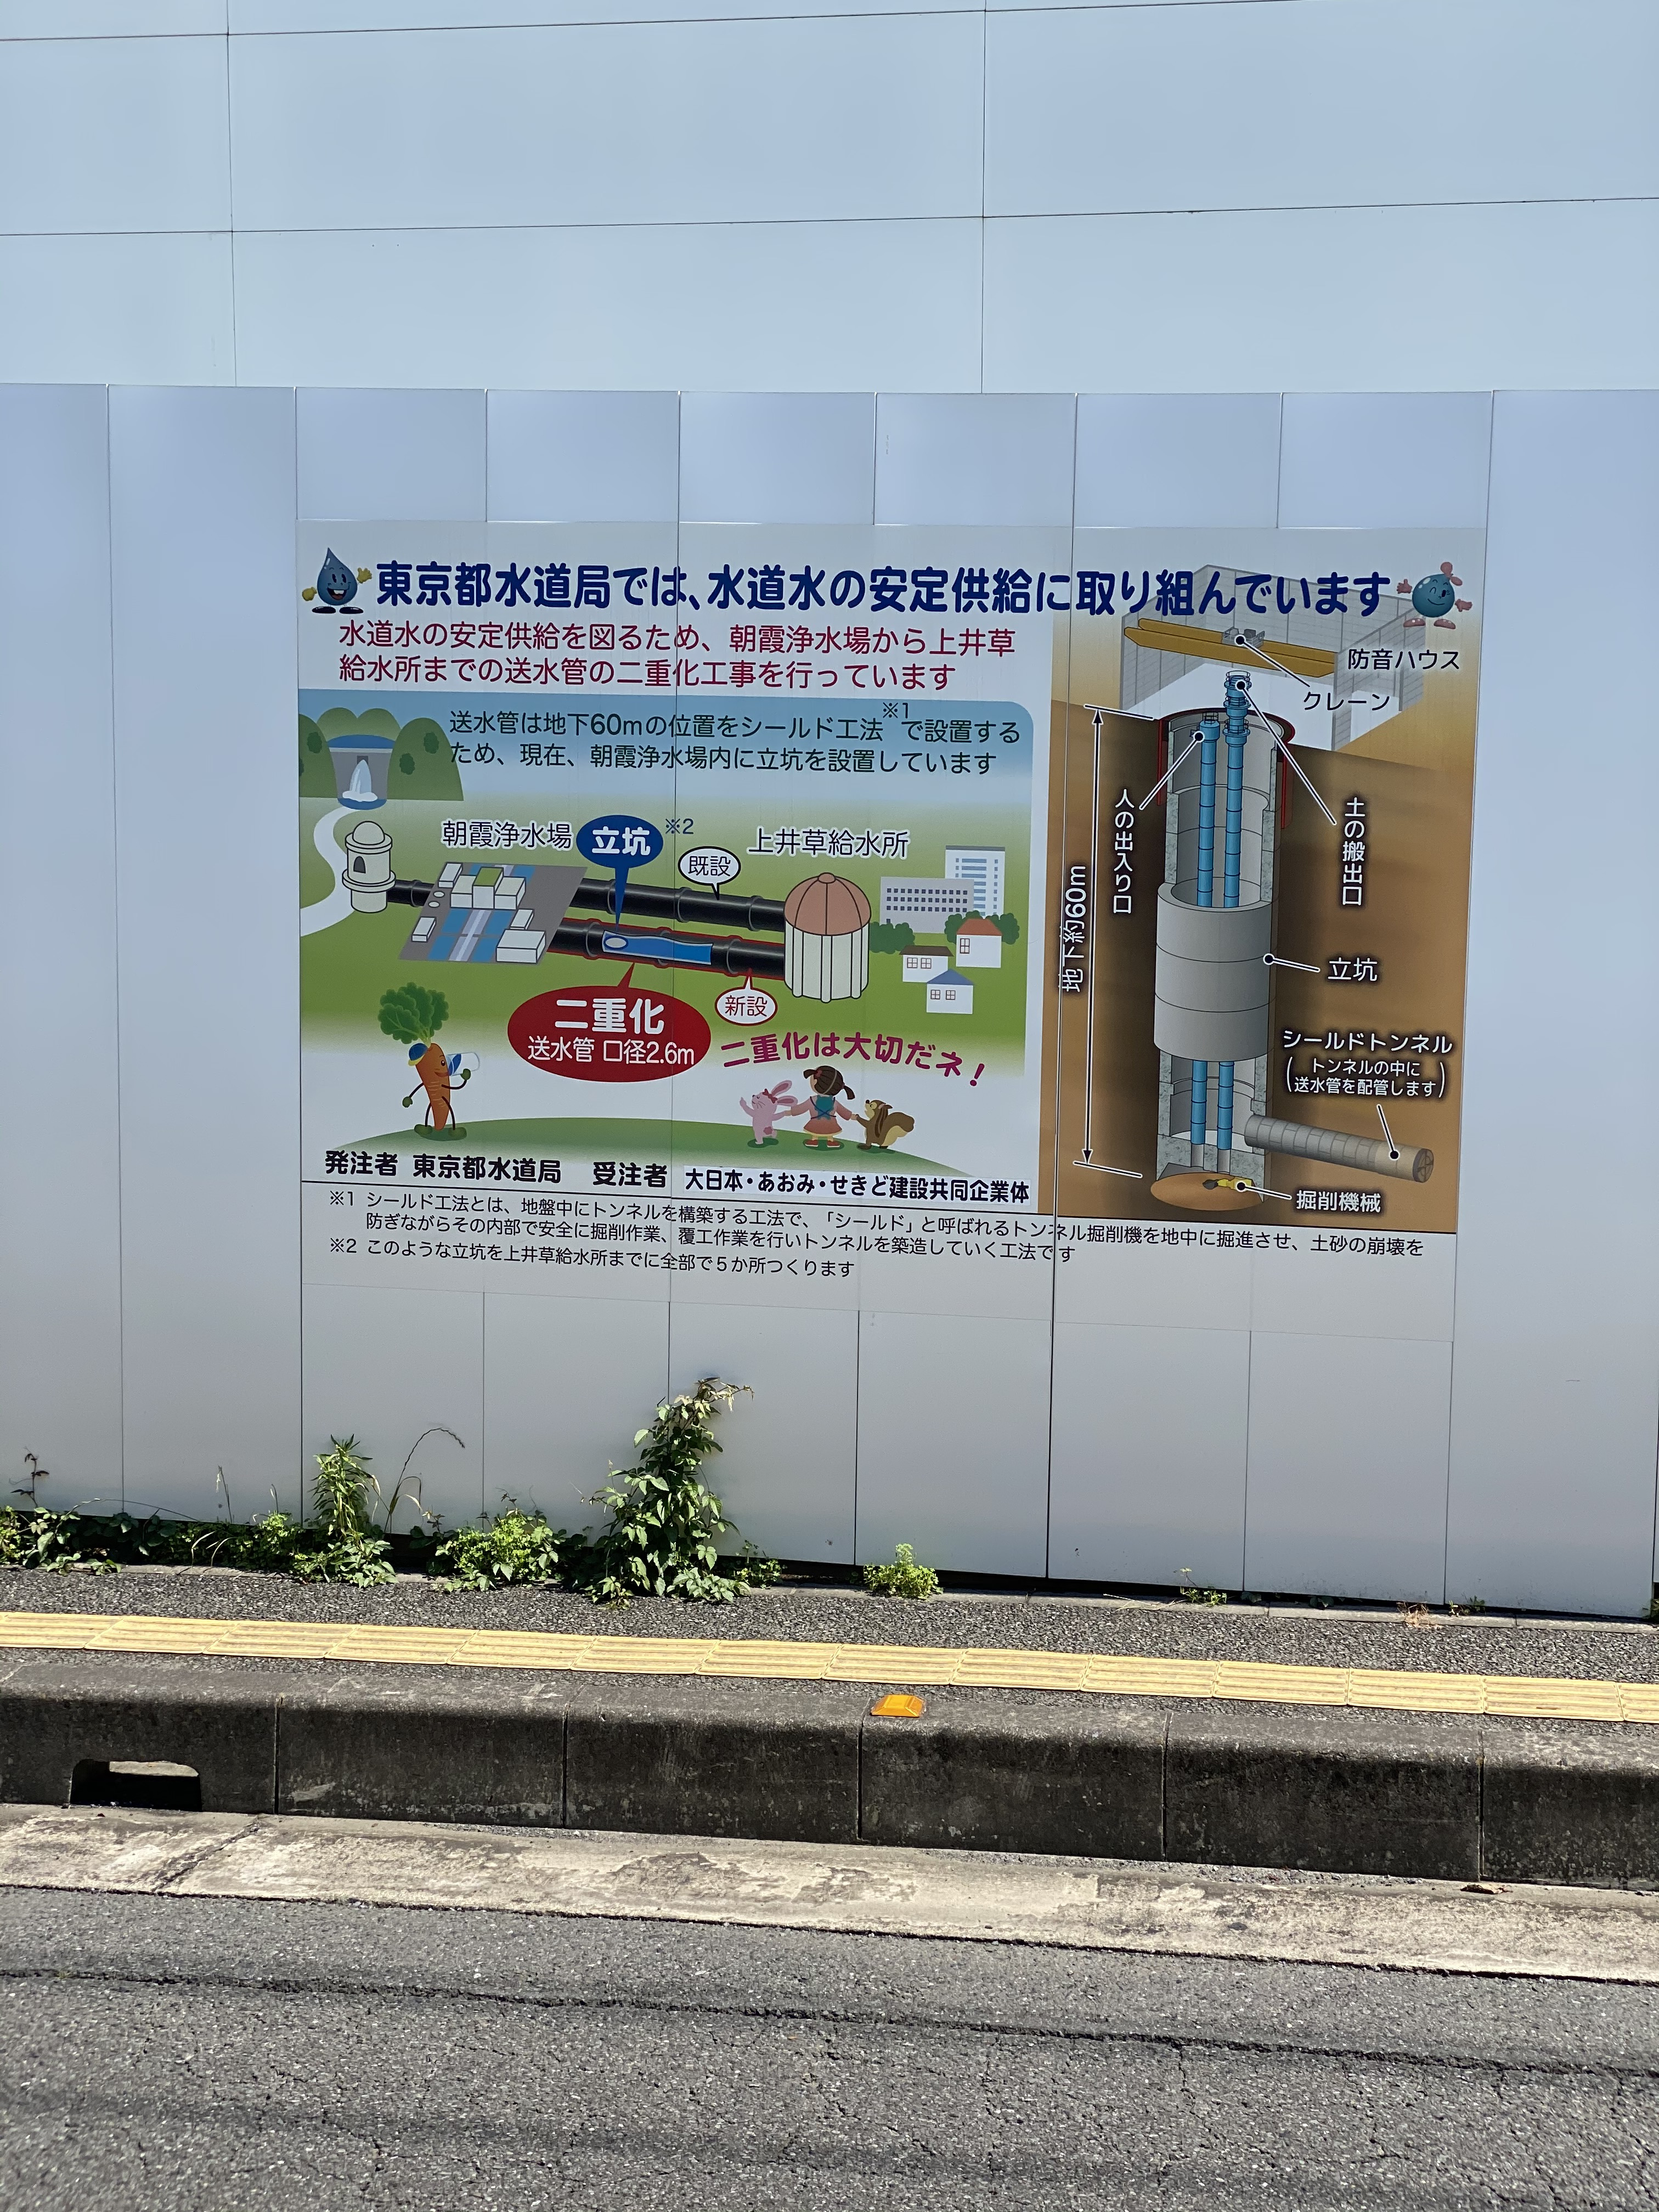 東京都水道局では、水道水の安定供給に取り組んでいます。